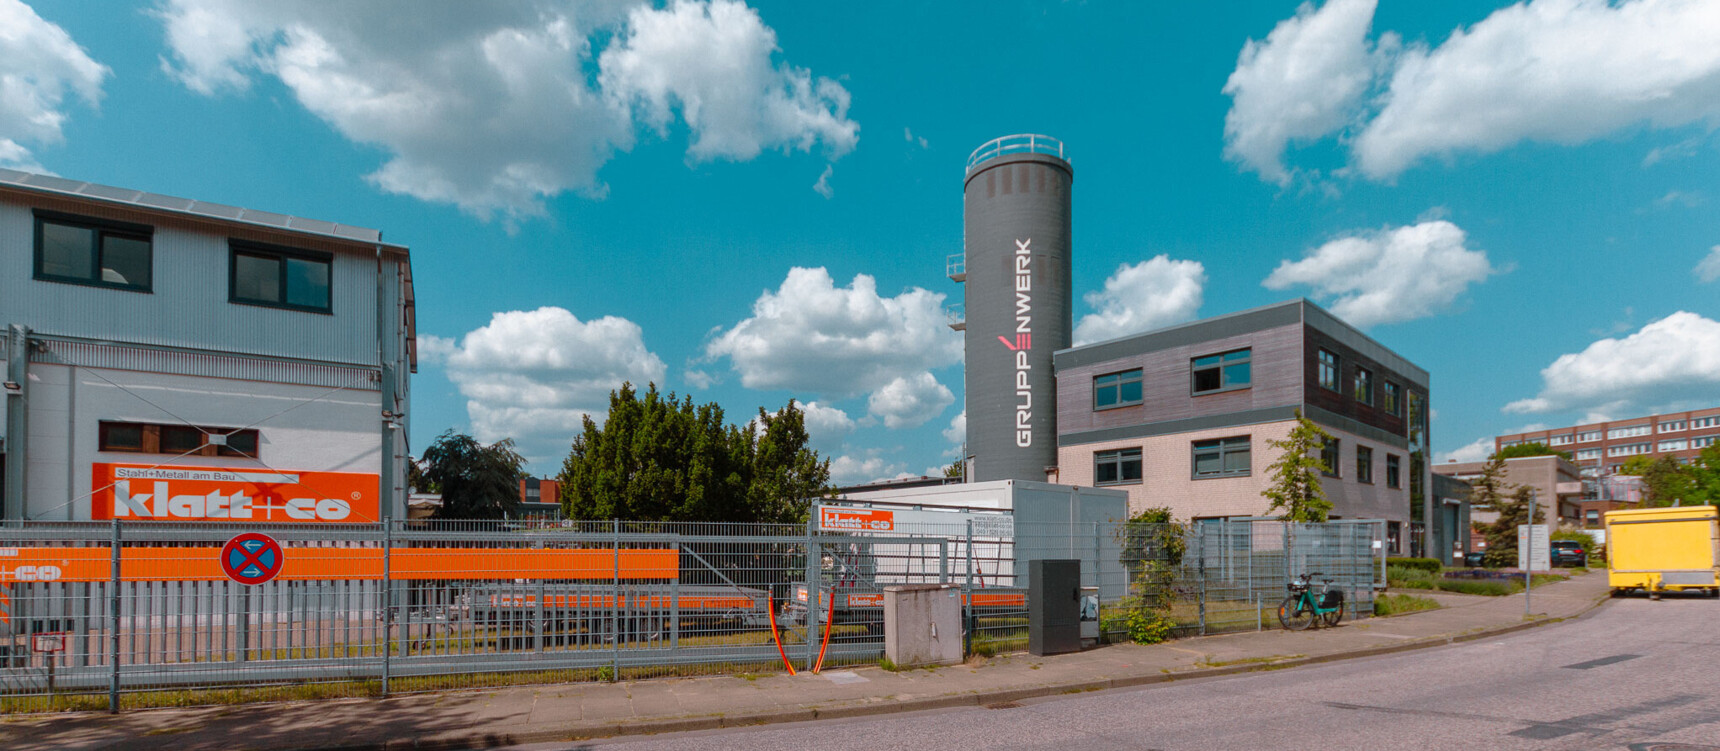 Die Firmen Klatt & co. und Gruppenwerk am Standort südliches Flughafenumfeld